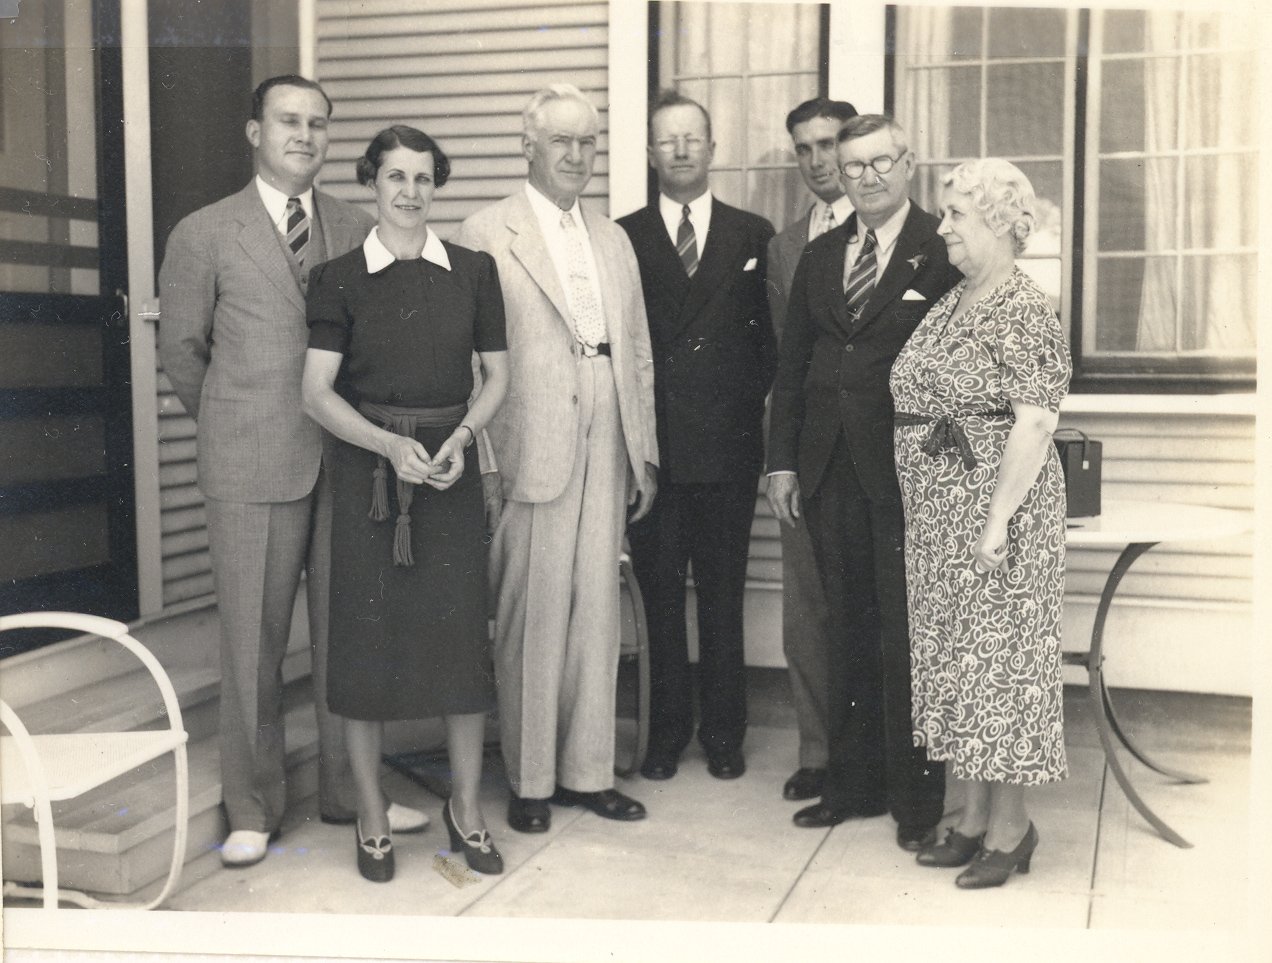 Webb Family, ca 1940s